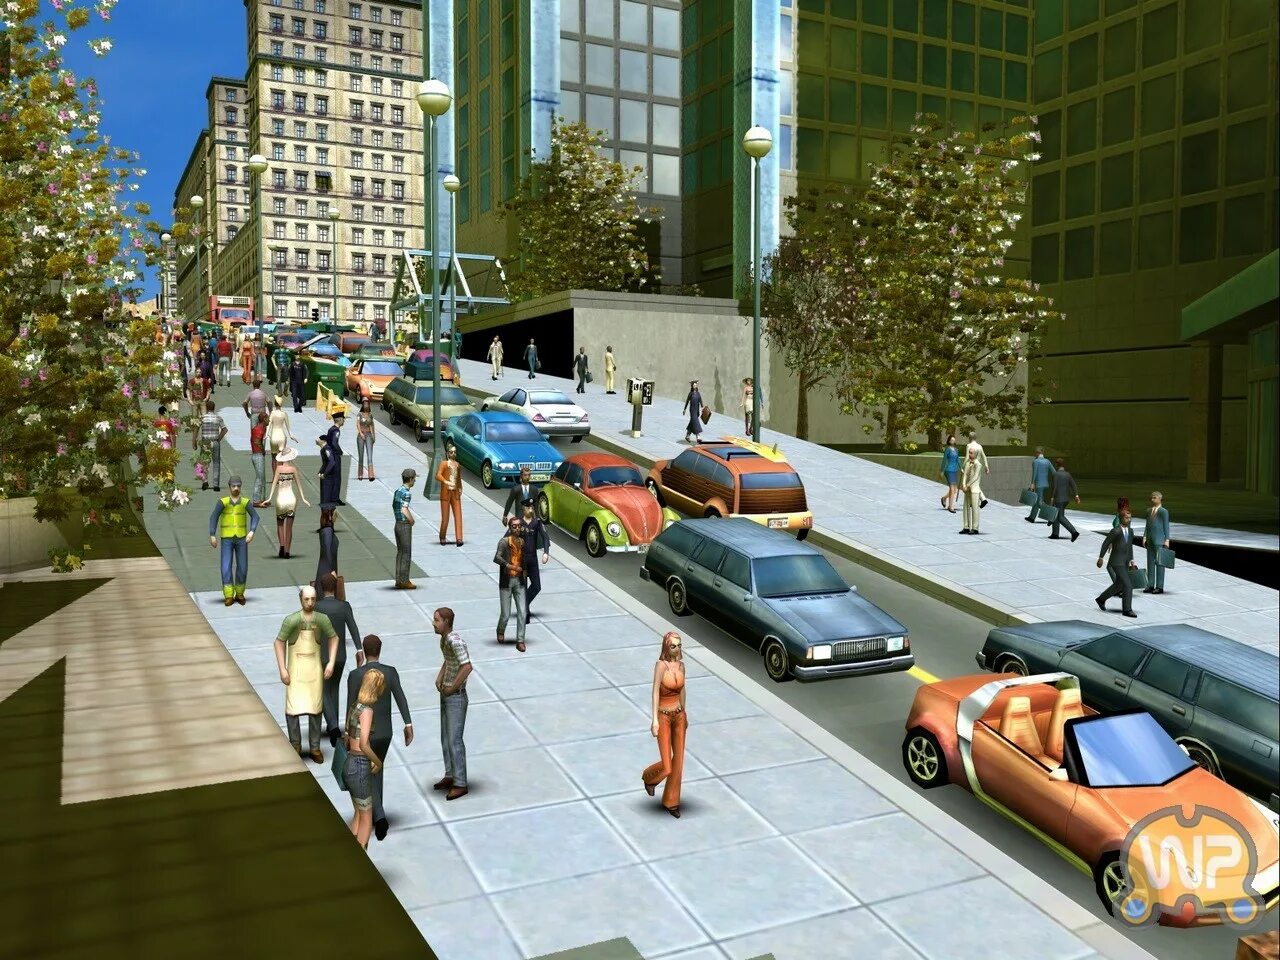 City Life 2008. City Life: город твоей мечты градостроительные симуляторы. Сити лайф игра 2016. City Life 2008: город, созданный тобой.